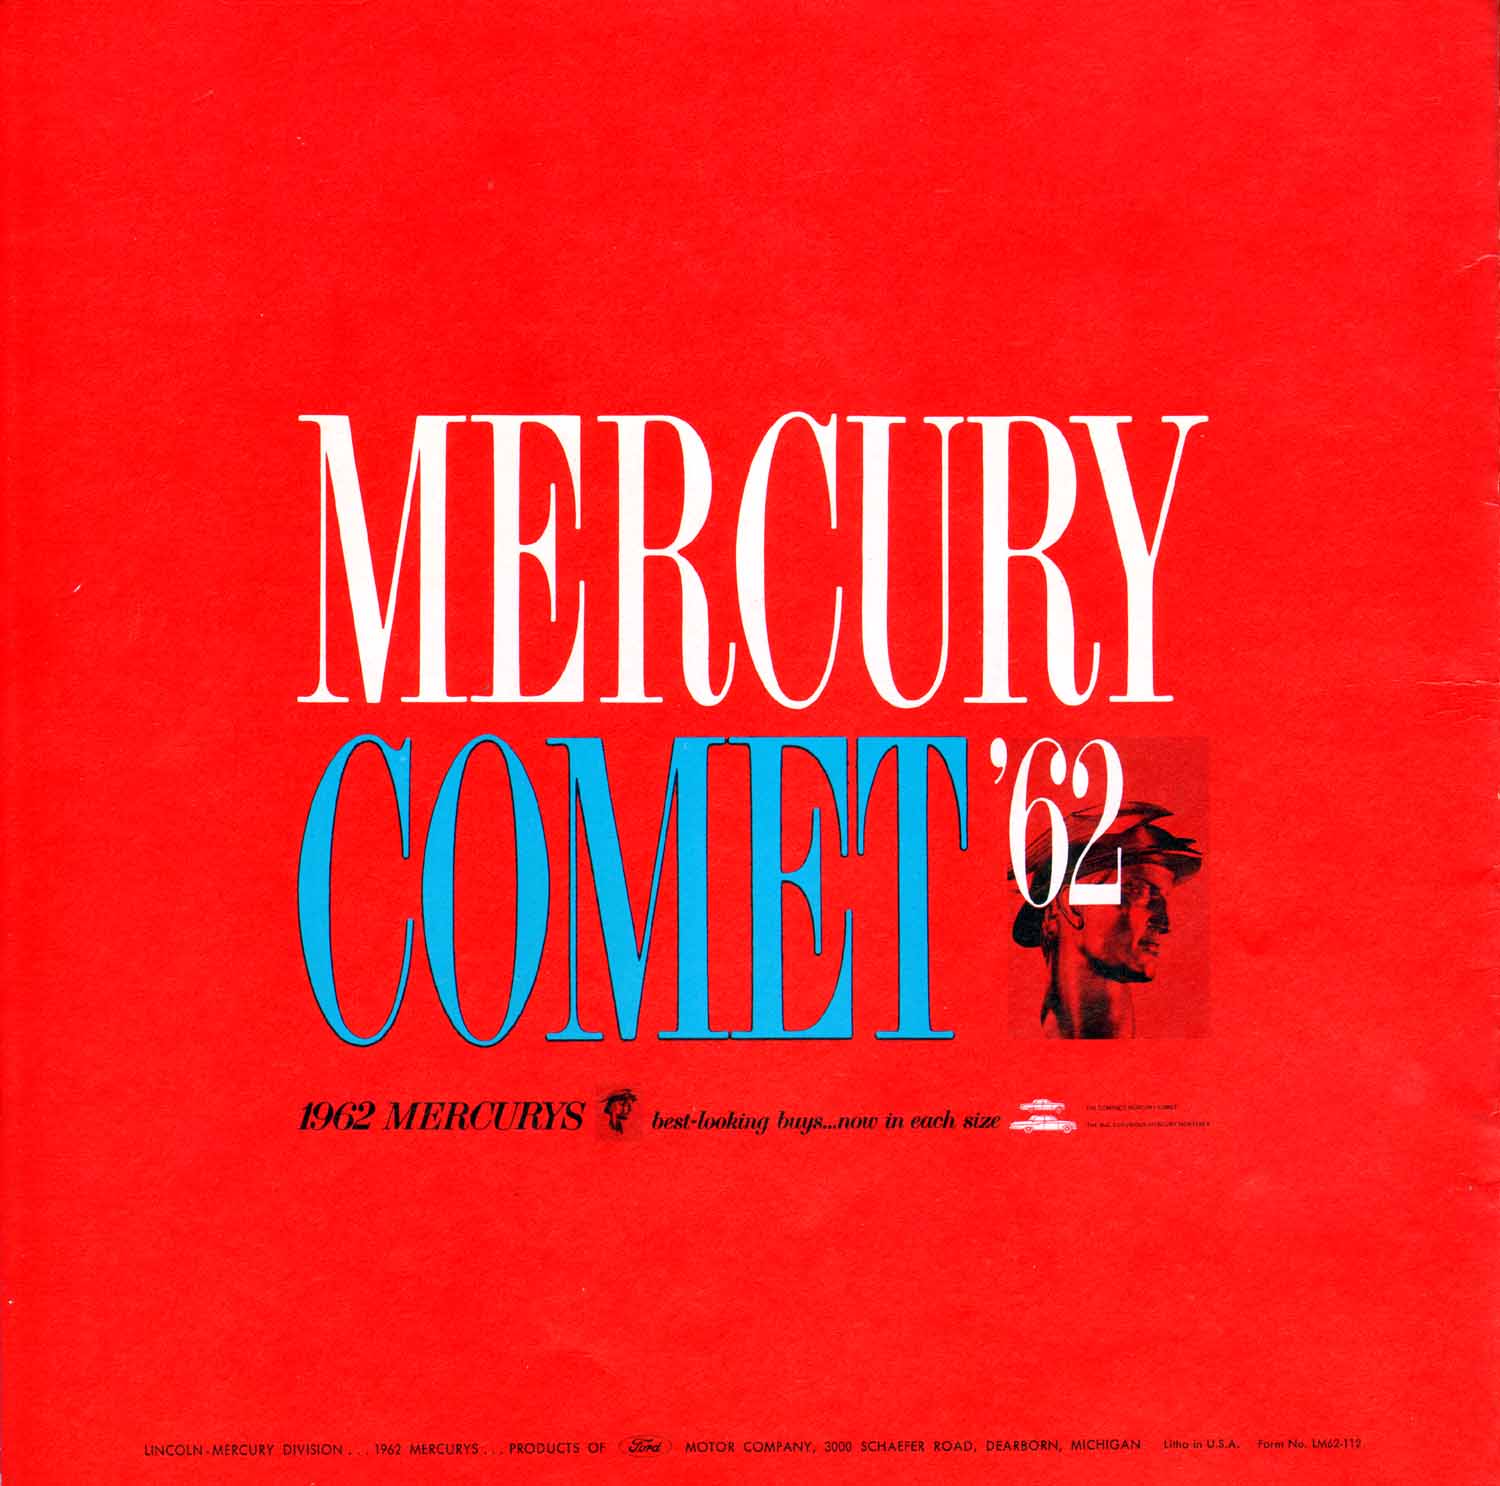 1962 Mercury Comet-22